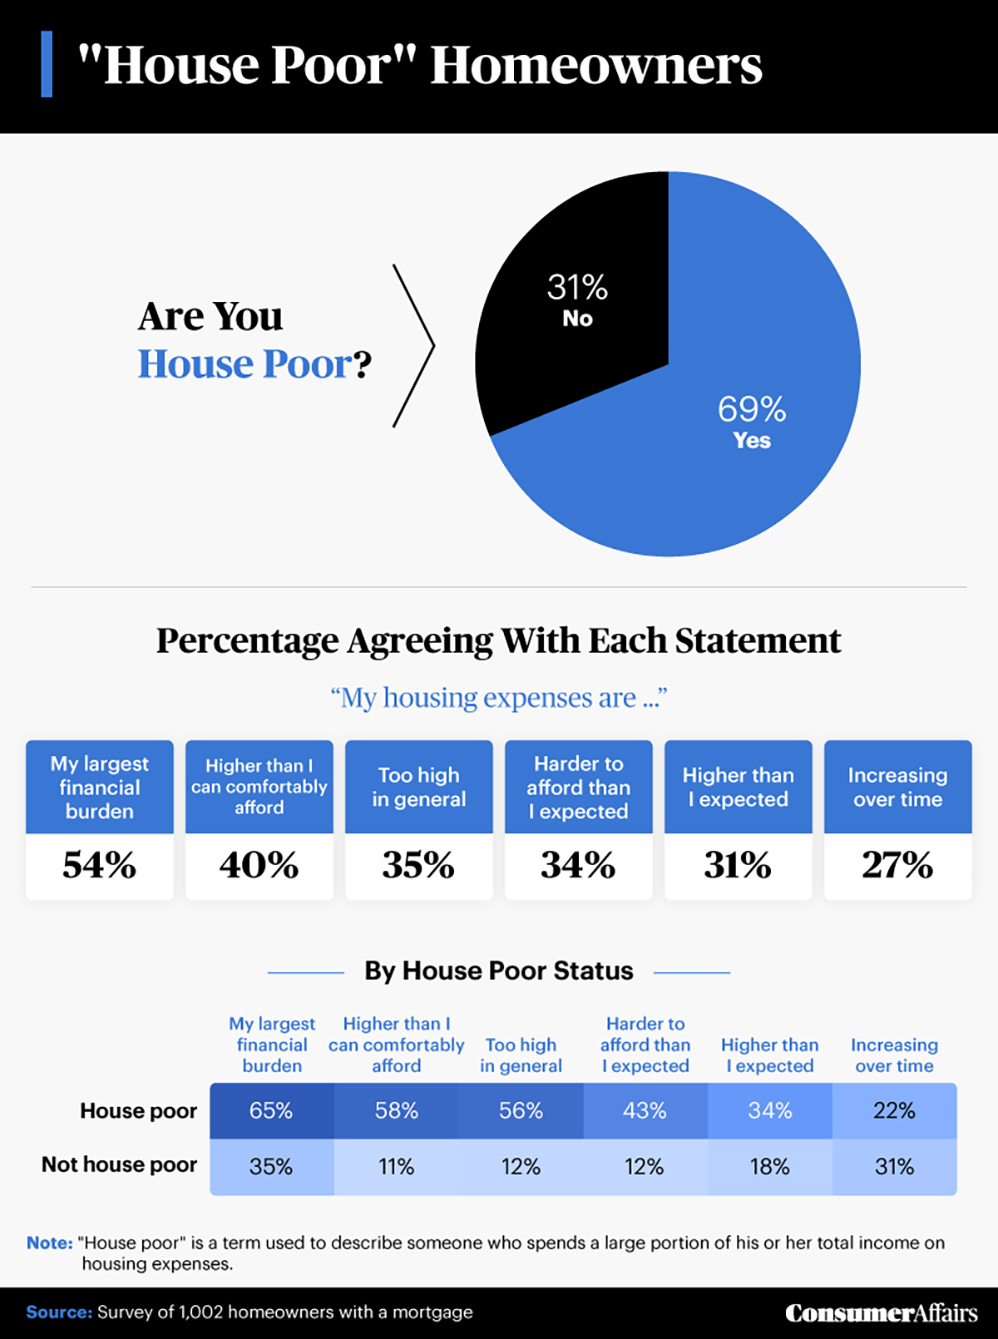 Ce este considerat sărac de casă?